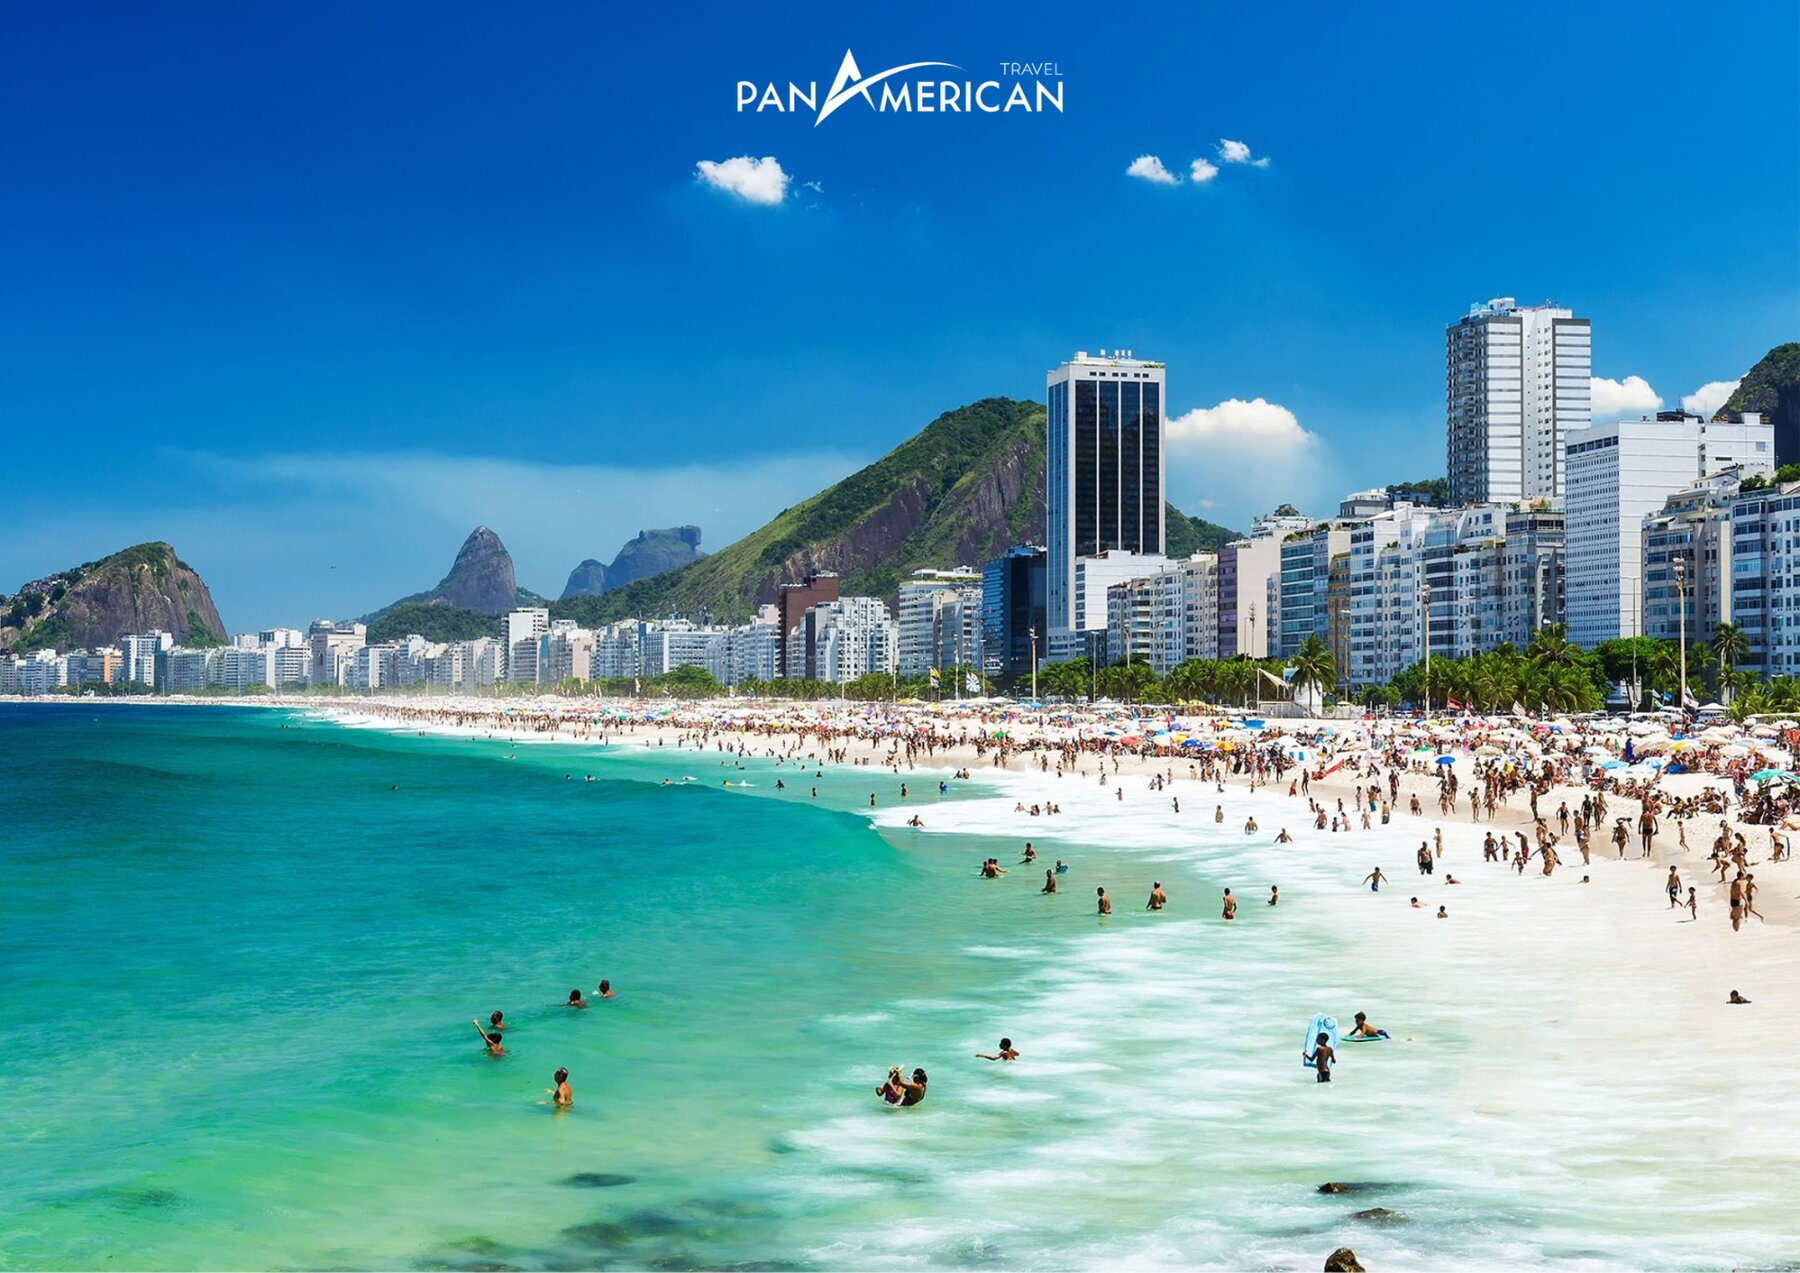 Bãi biển Copacabana mệnh danh là địa điểm du lịch đẹp nhất ở Brazil 